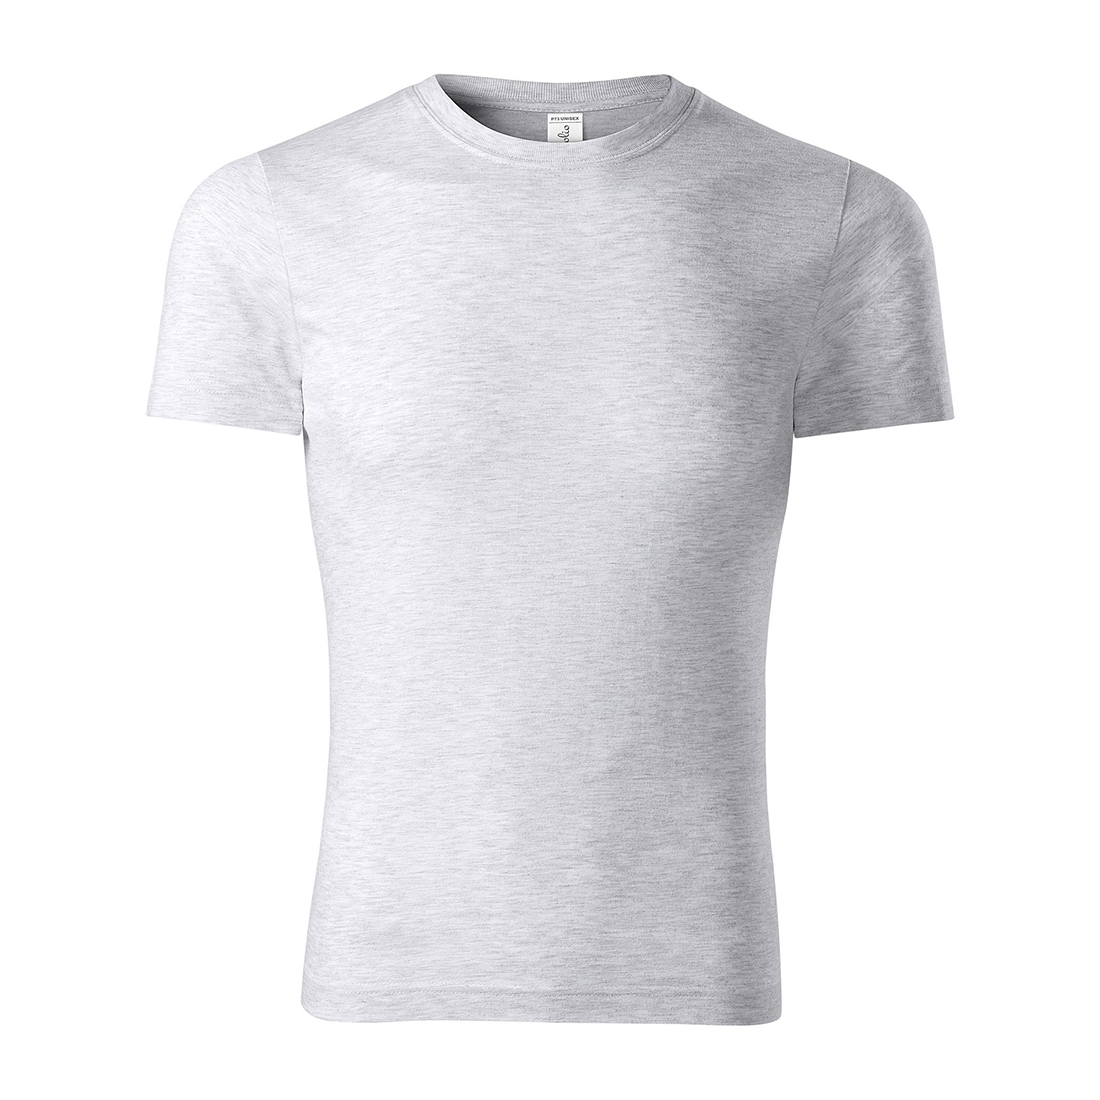 Camiseta unisex 100% algodón - Ropa de protección